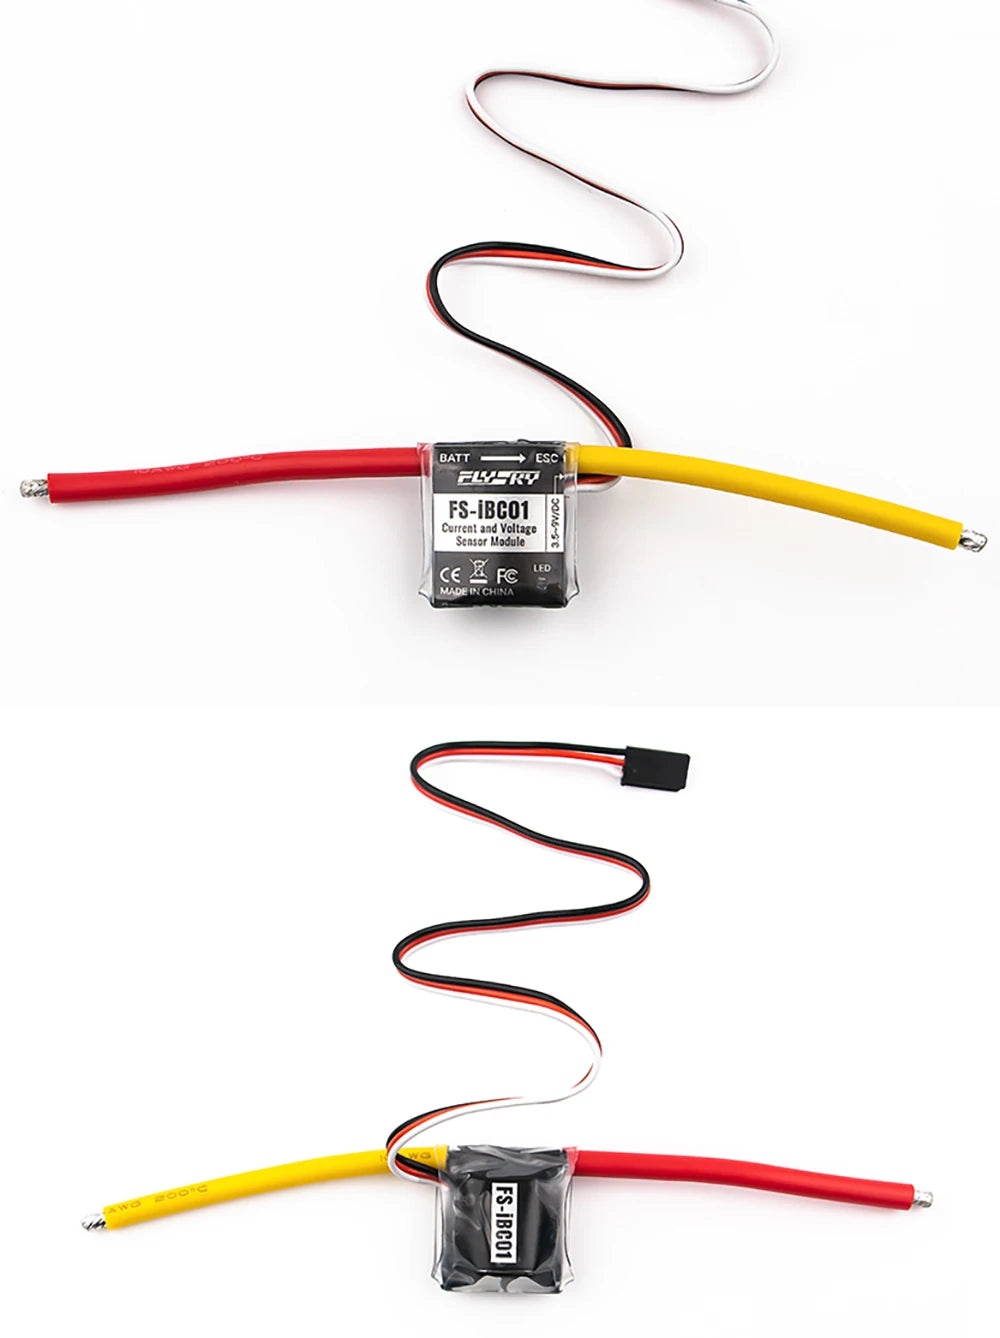 FLYSKY Fuchs FS-IBC01 current and voltage sensor, BaTt ESC ESRY FS-iBCOT Cerrenl Jnd